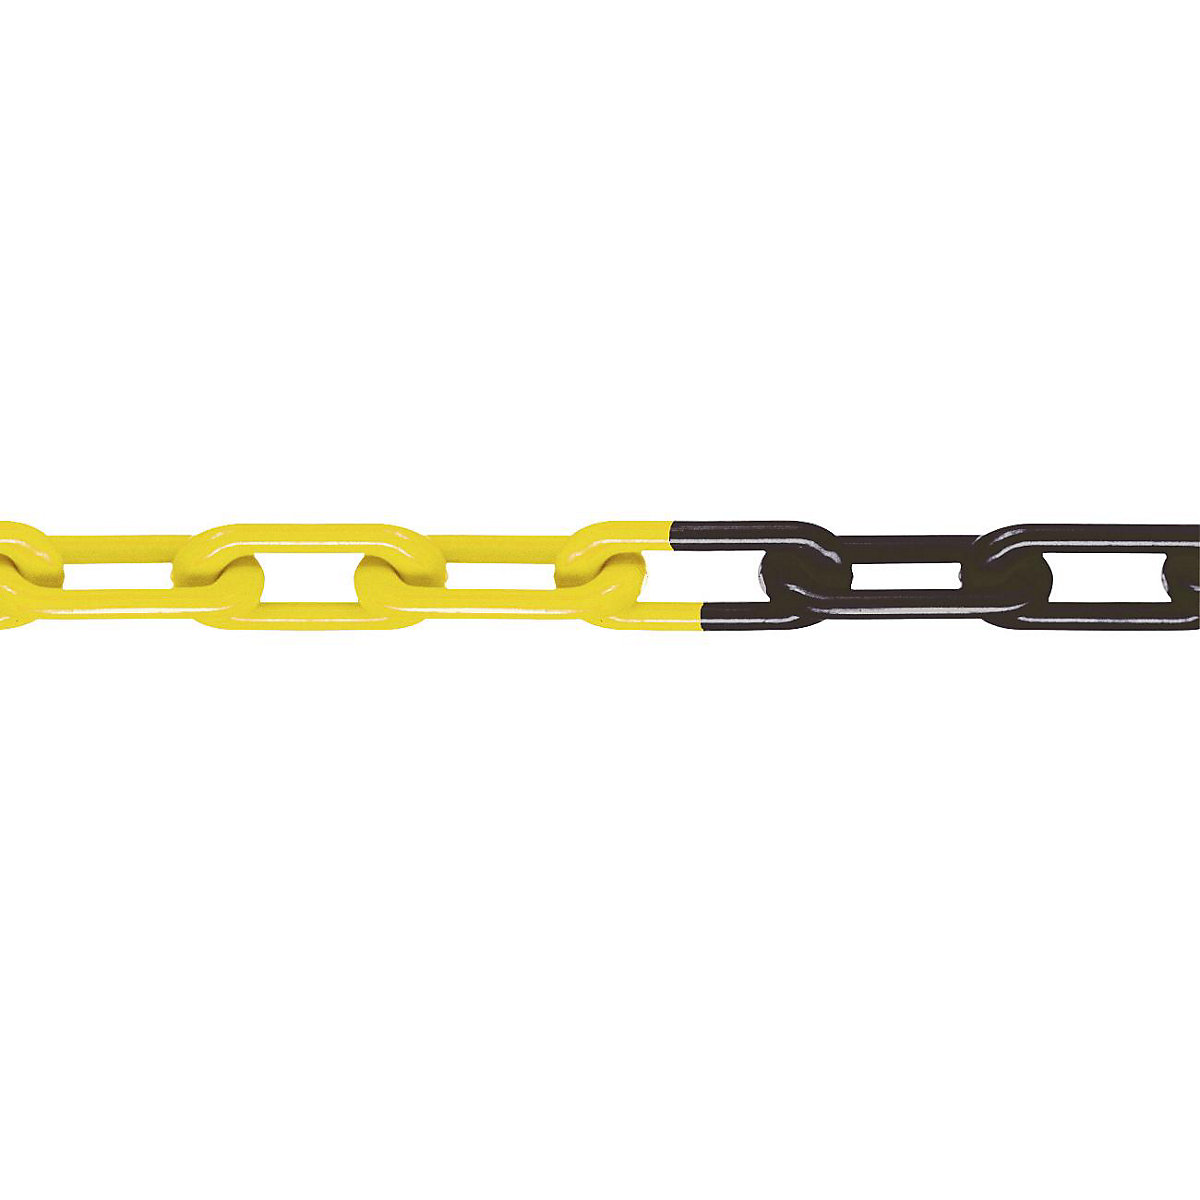 Łańcuch z nylonu, jakość MNK 8, dł. wiązki 25 m, żółto-czarny, od 4 szt.-7